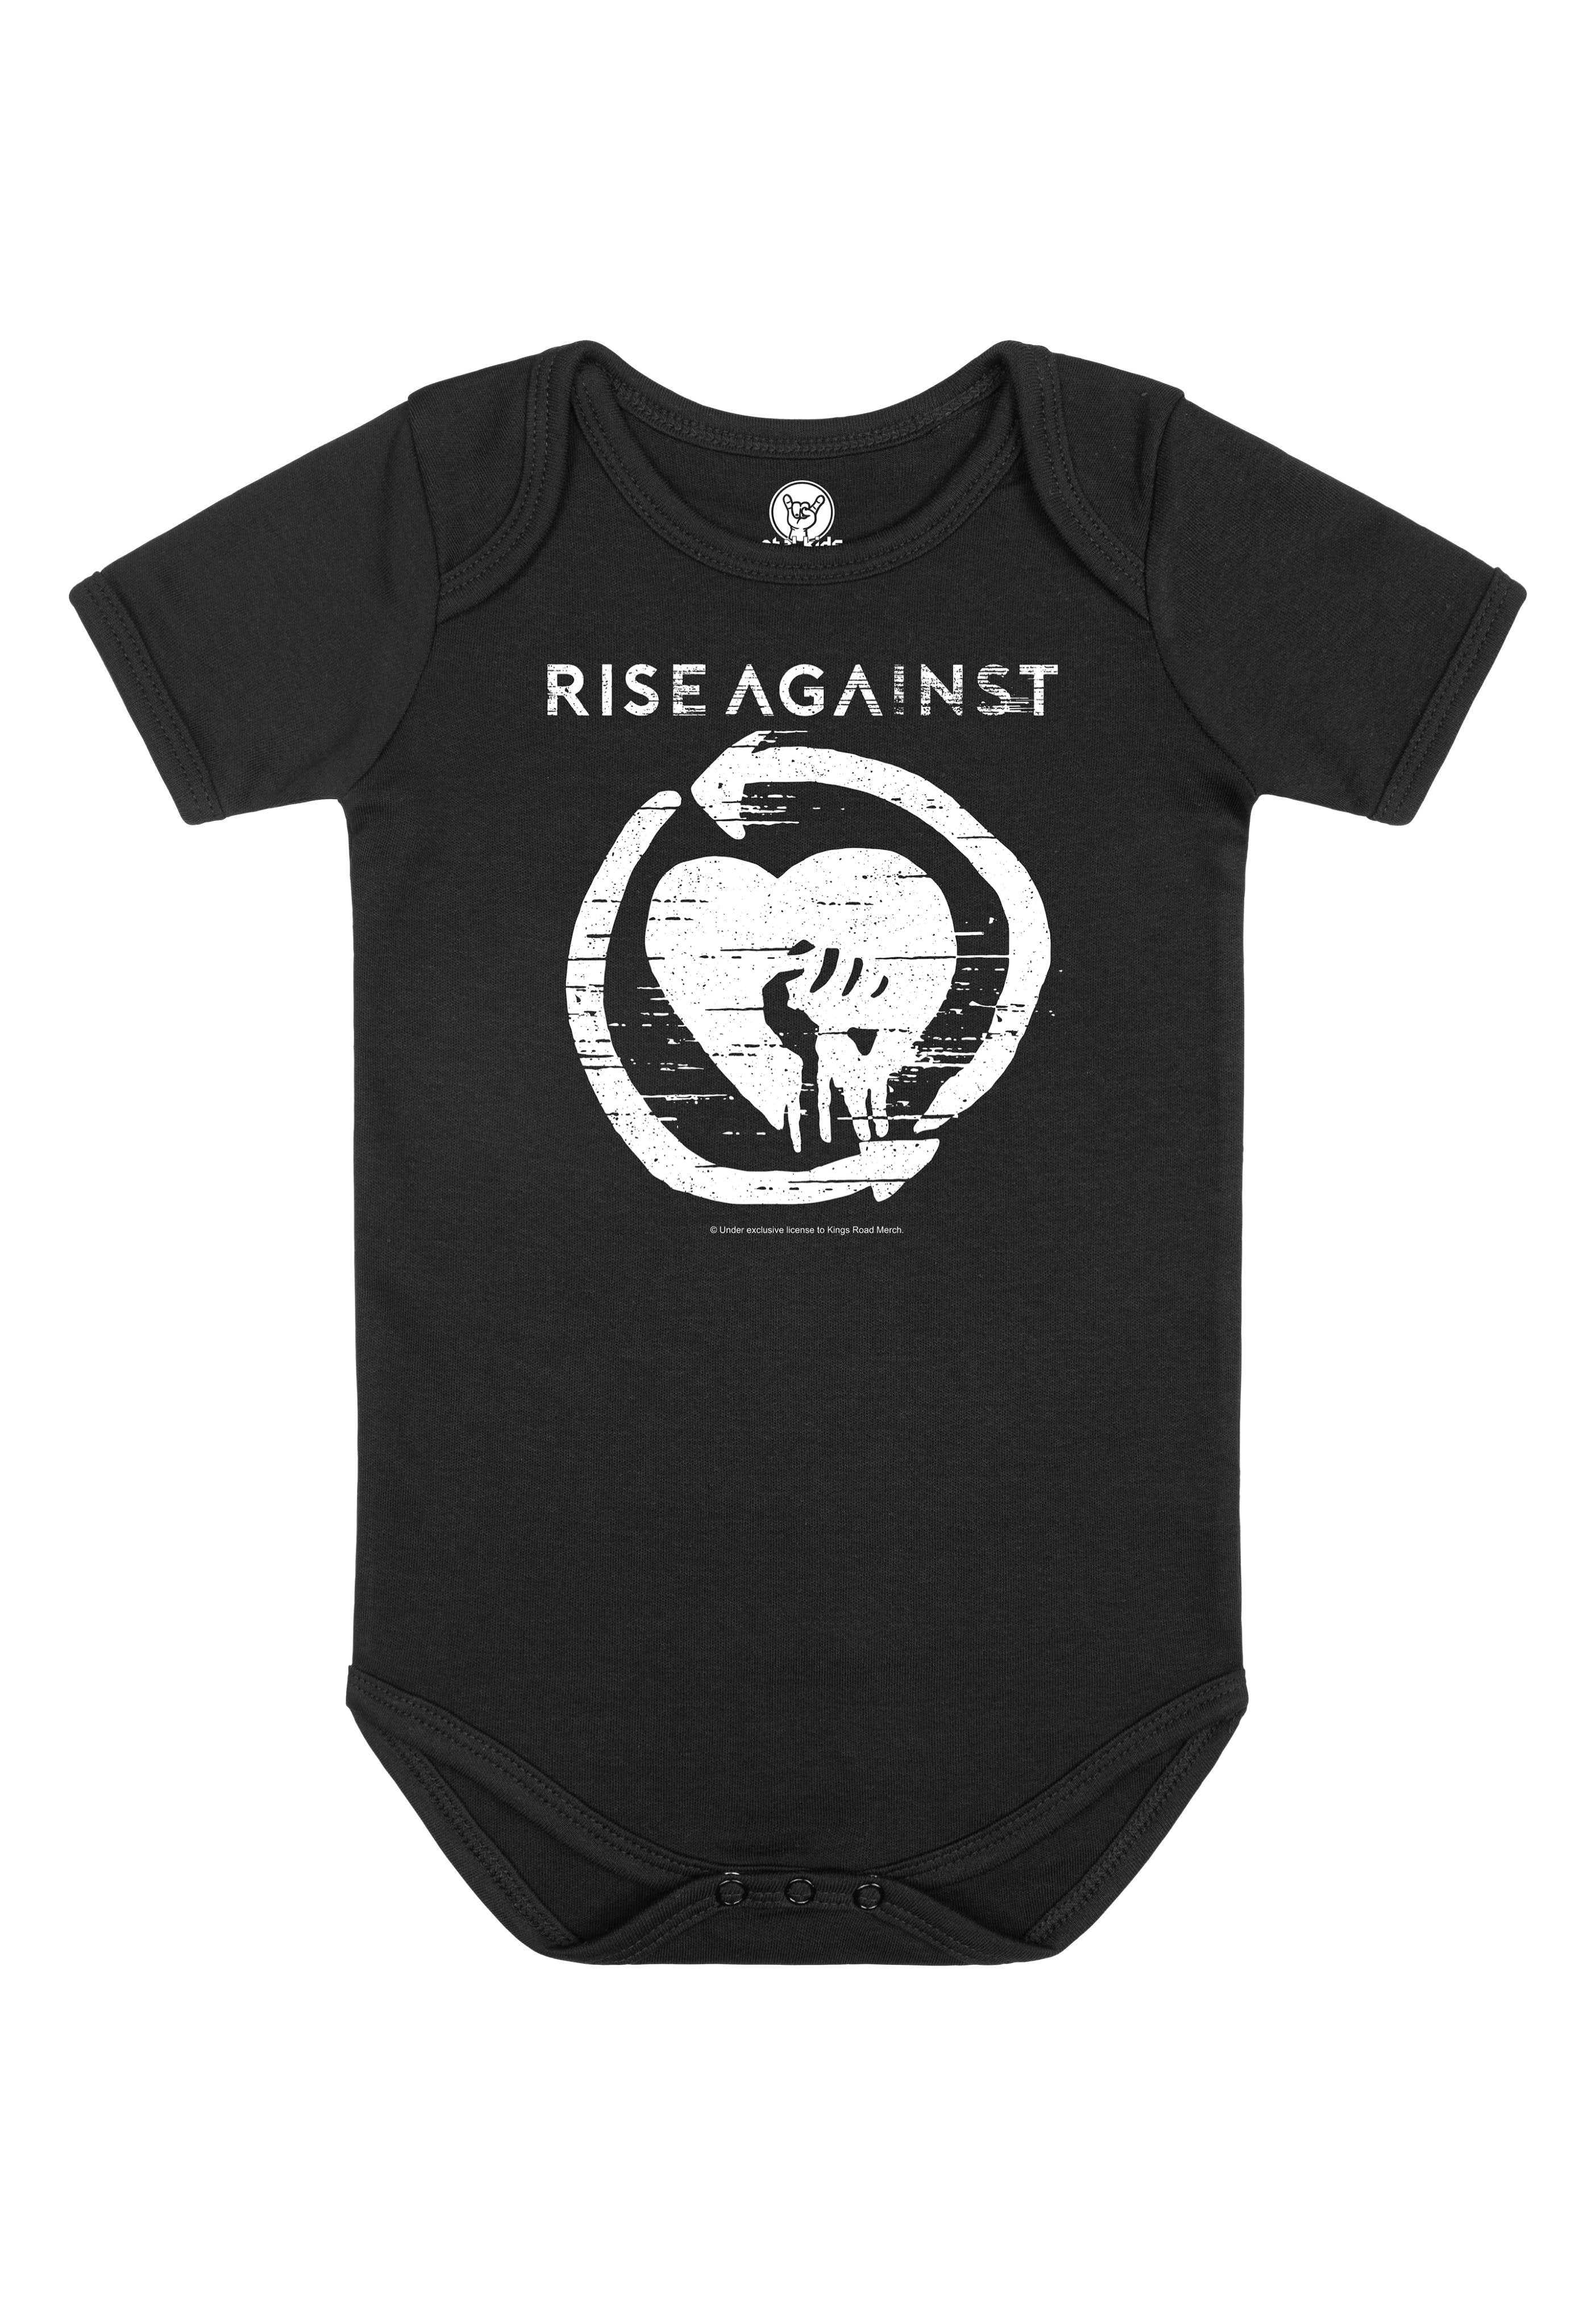 Rise Against - Heartfist Babygrow Black/White - Bodysuit